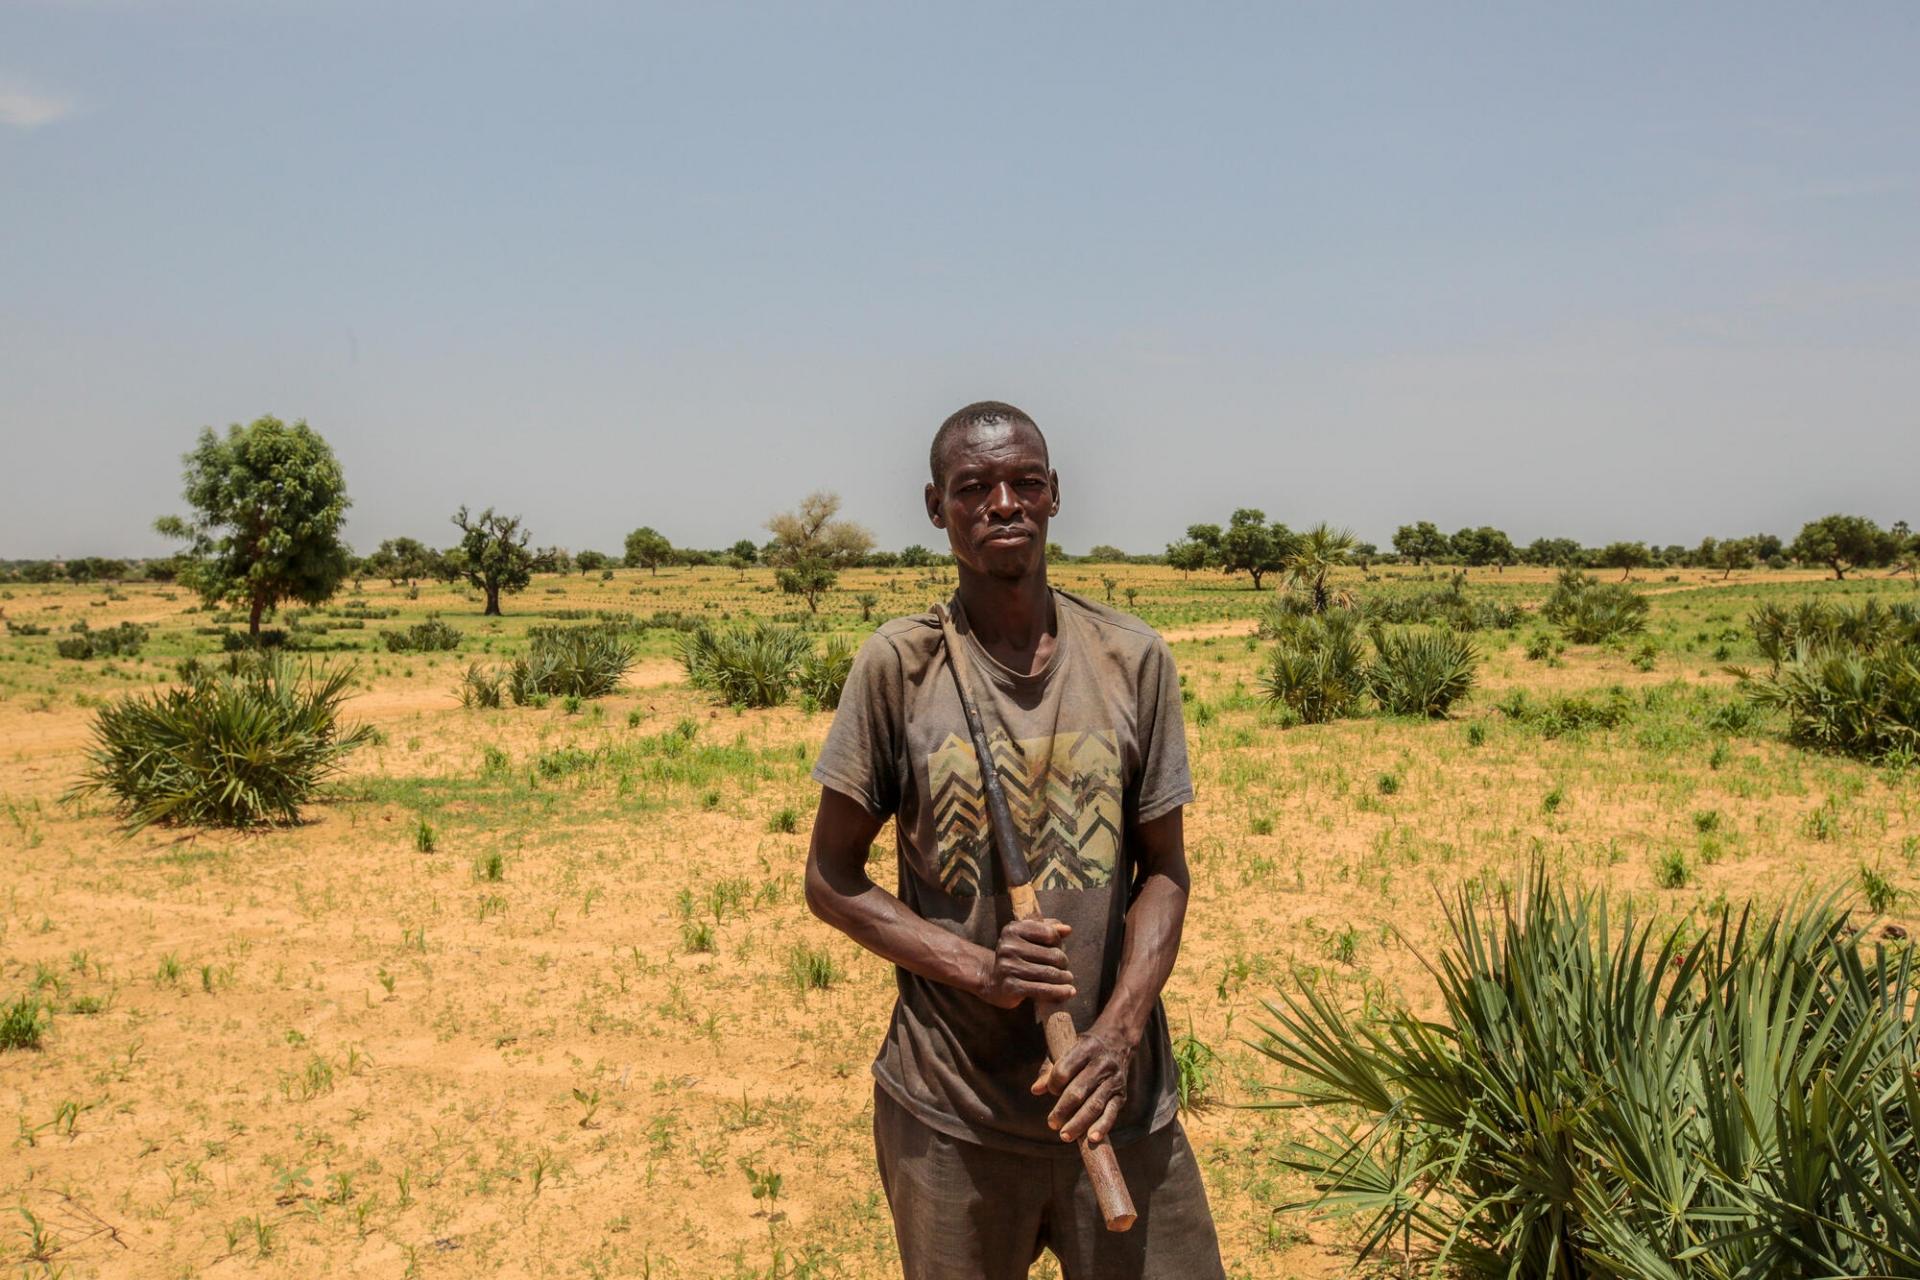 Portrait d’Umar Abdul, fermier et agriculteur, dans les champs près du village de Riko.  Les attaques répétées de groupes armés, appelés « bandits », empêchent les habitants comme Umar d’accéder à leurs champs et de cultiver leurs terres, ce qui contribue à aggraver la crise nutritionnelle en cours. État de Katsina, Nigeria, juin 2022. 